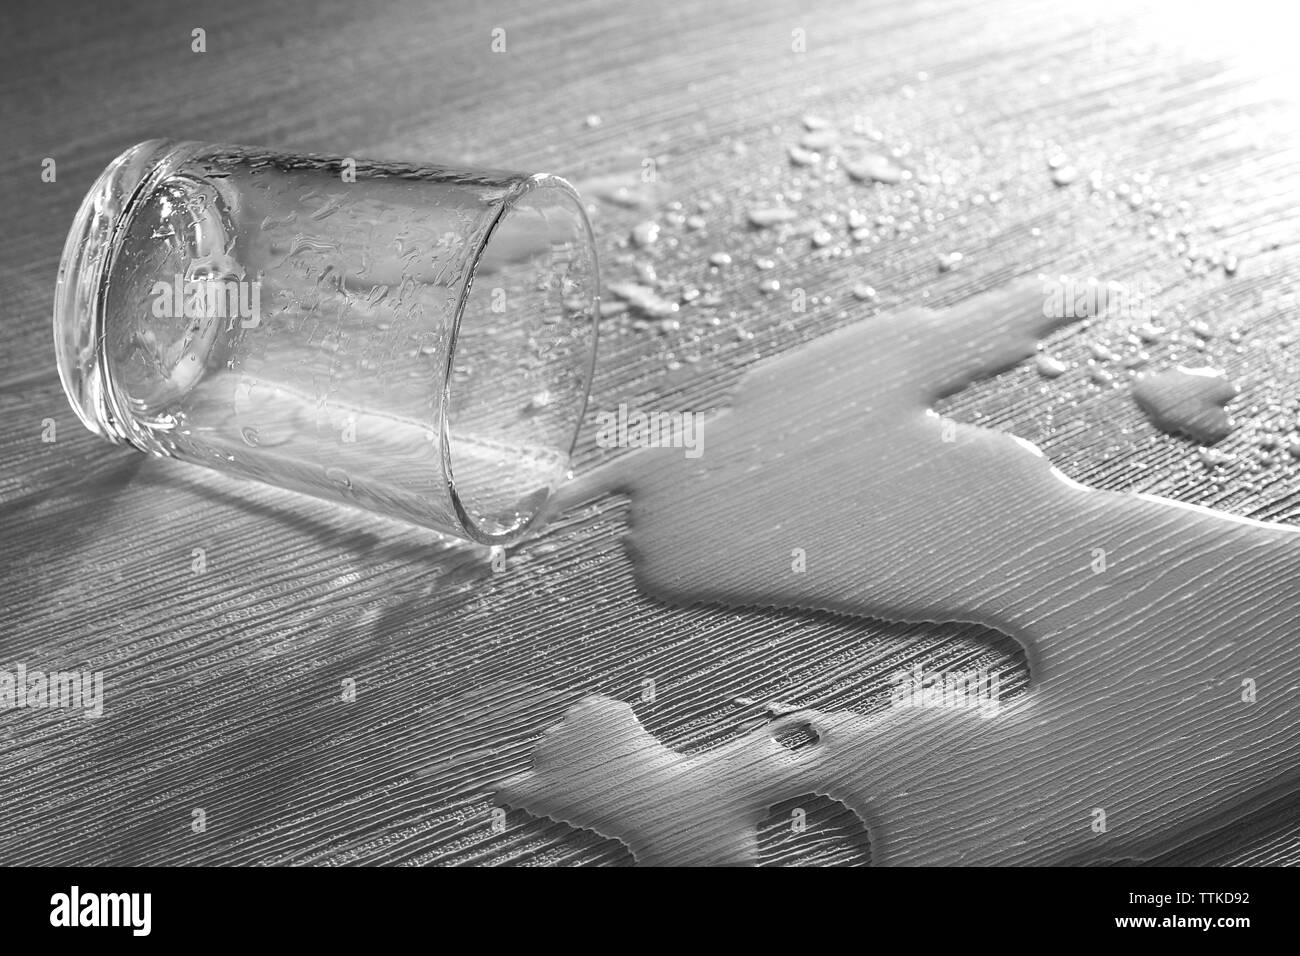 Vaso de agua derramado sobre fondo de textura Foto de stock